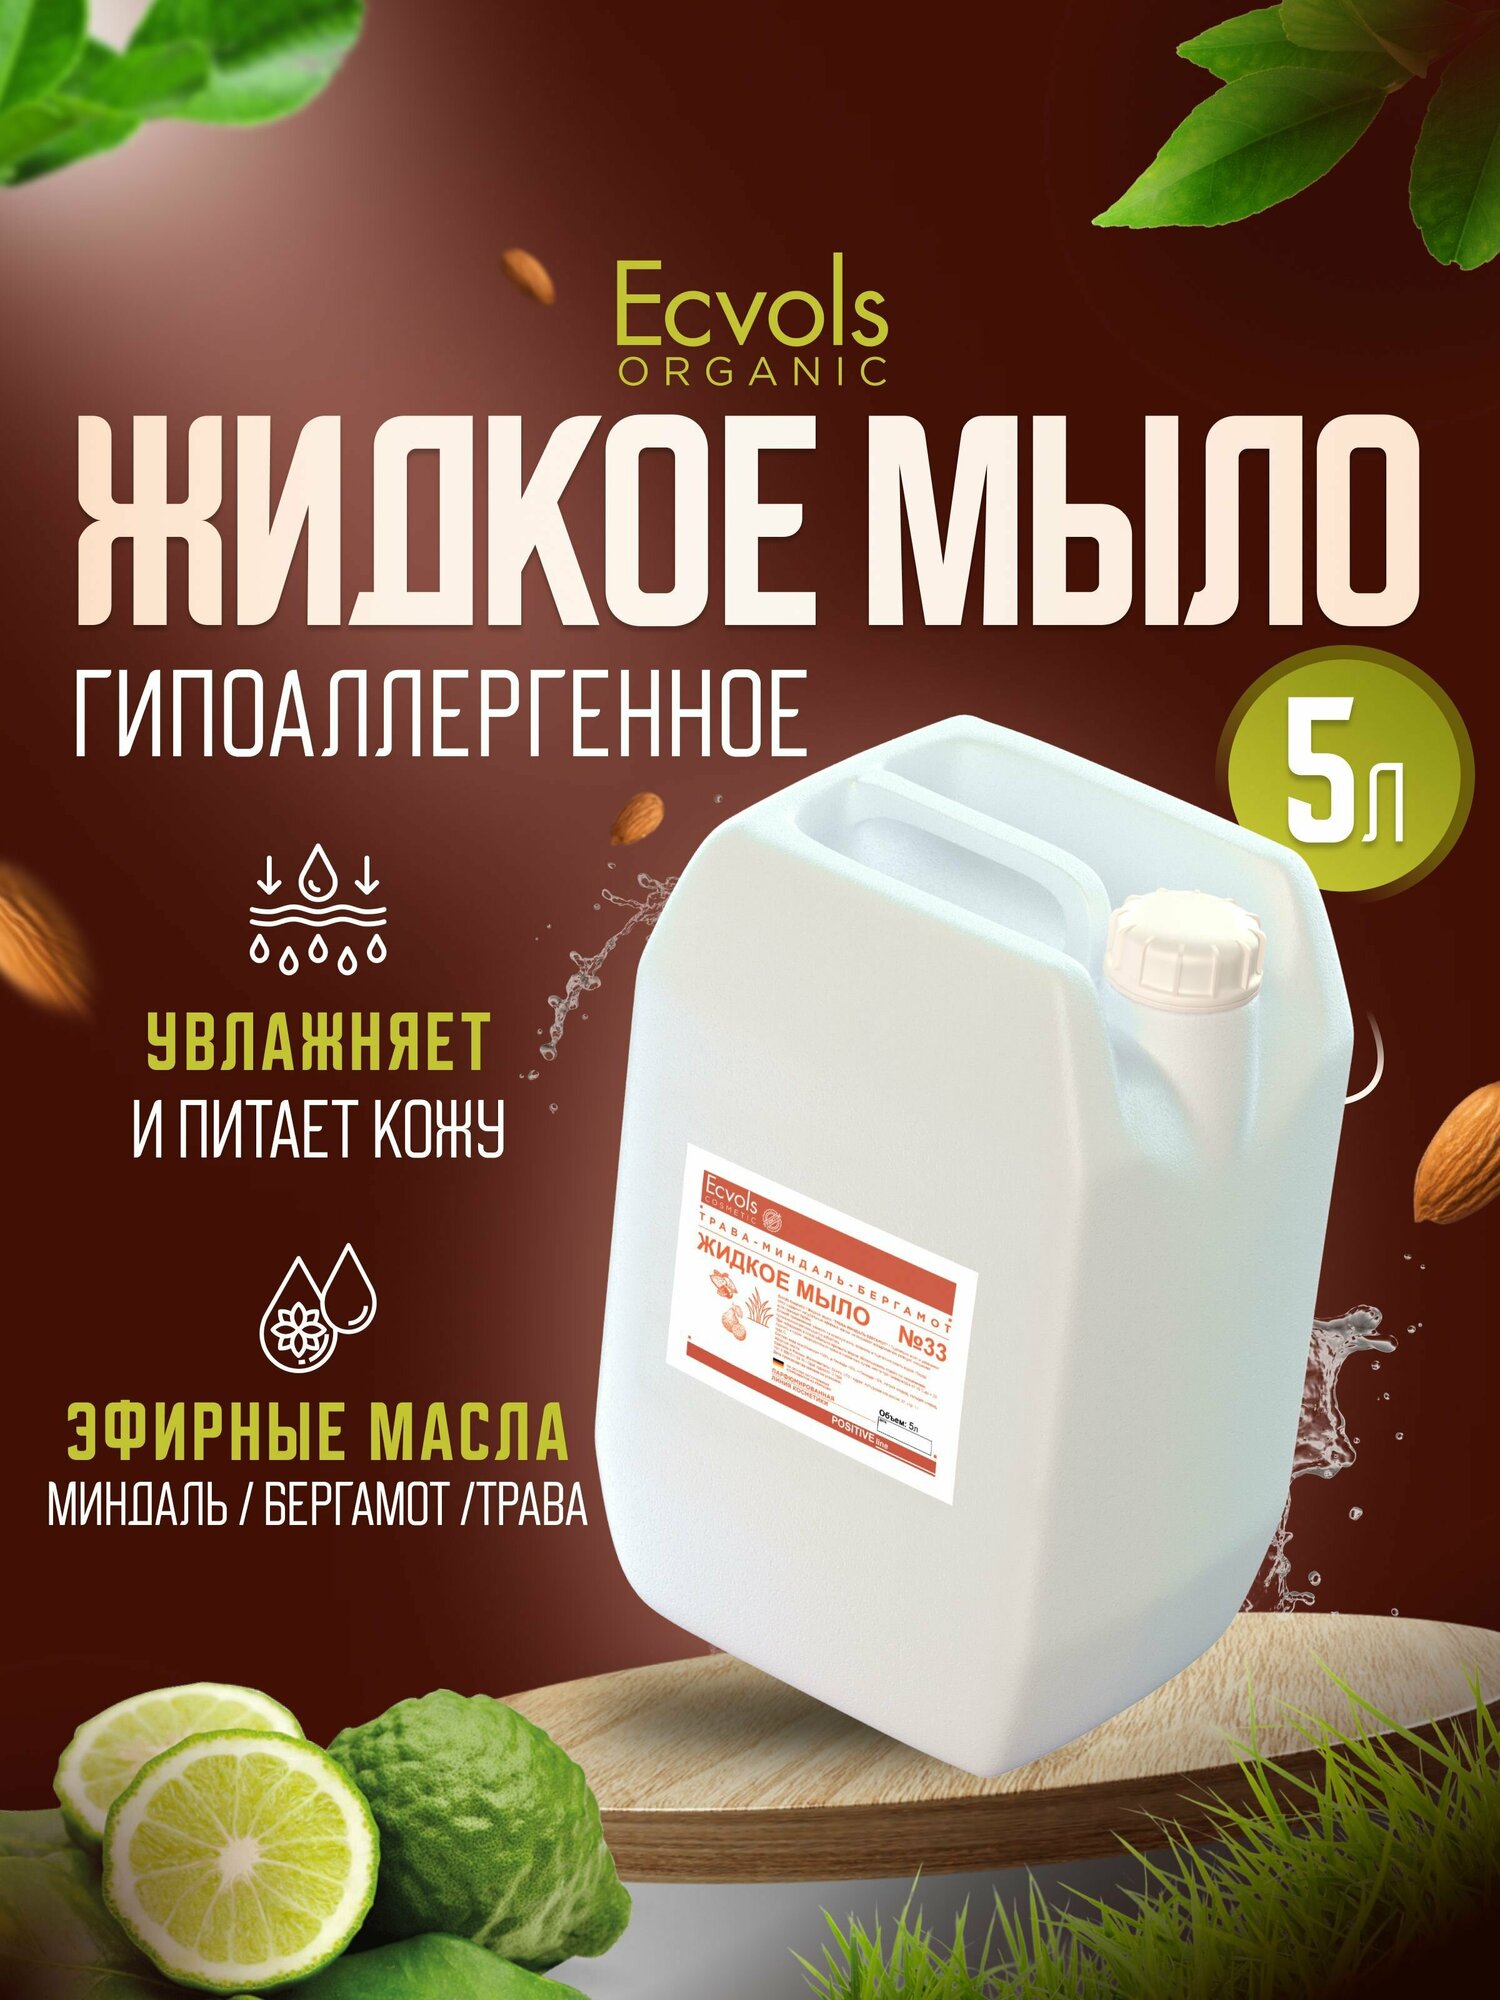 Жидкое мыло для рук и тела Ecvols Organic "Трава, миндаль, бергамот" увлажняющее, натуральное, 5 л